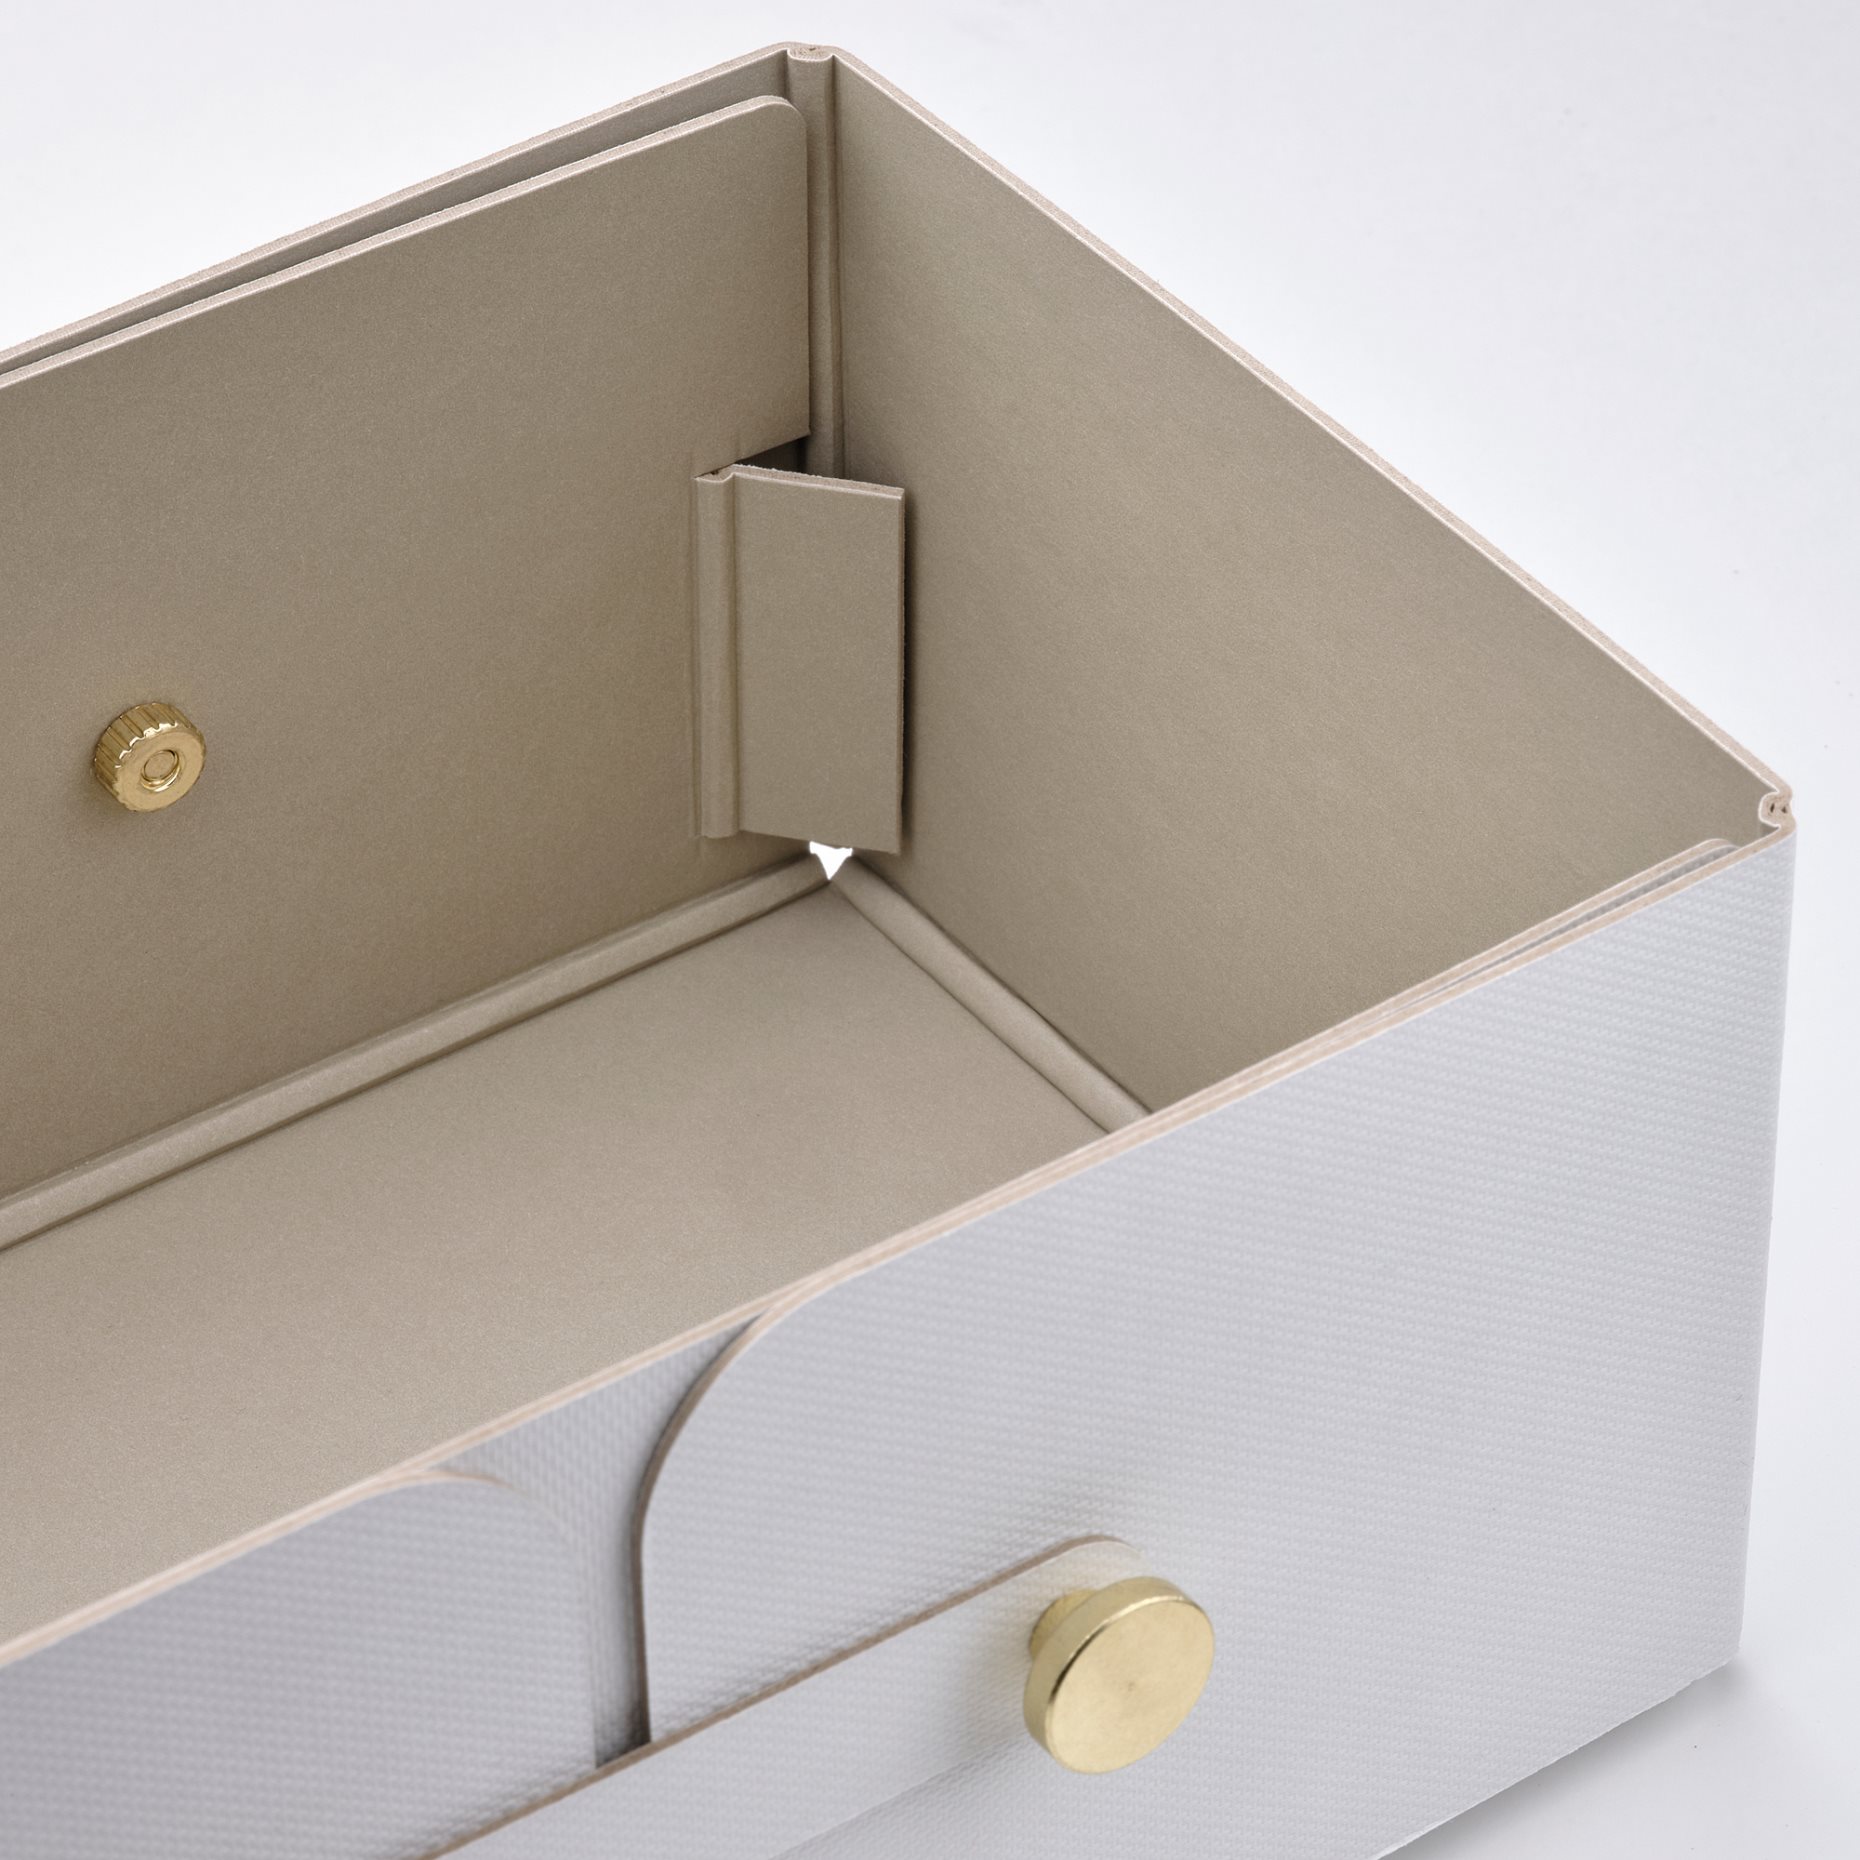 SPINNROCK, κουτί με διαχωριστικά, 25x16x10 cm, 105.430.49